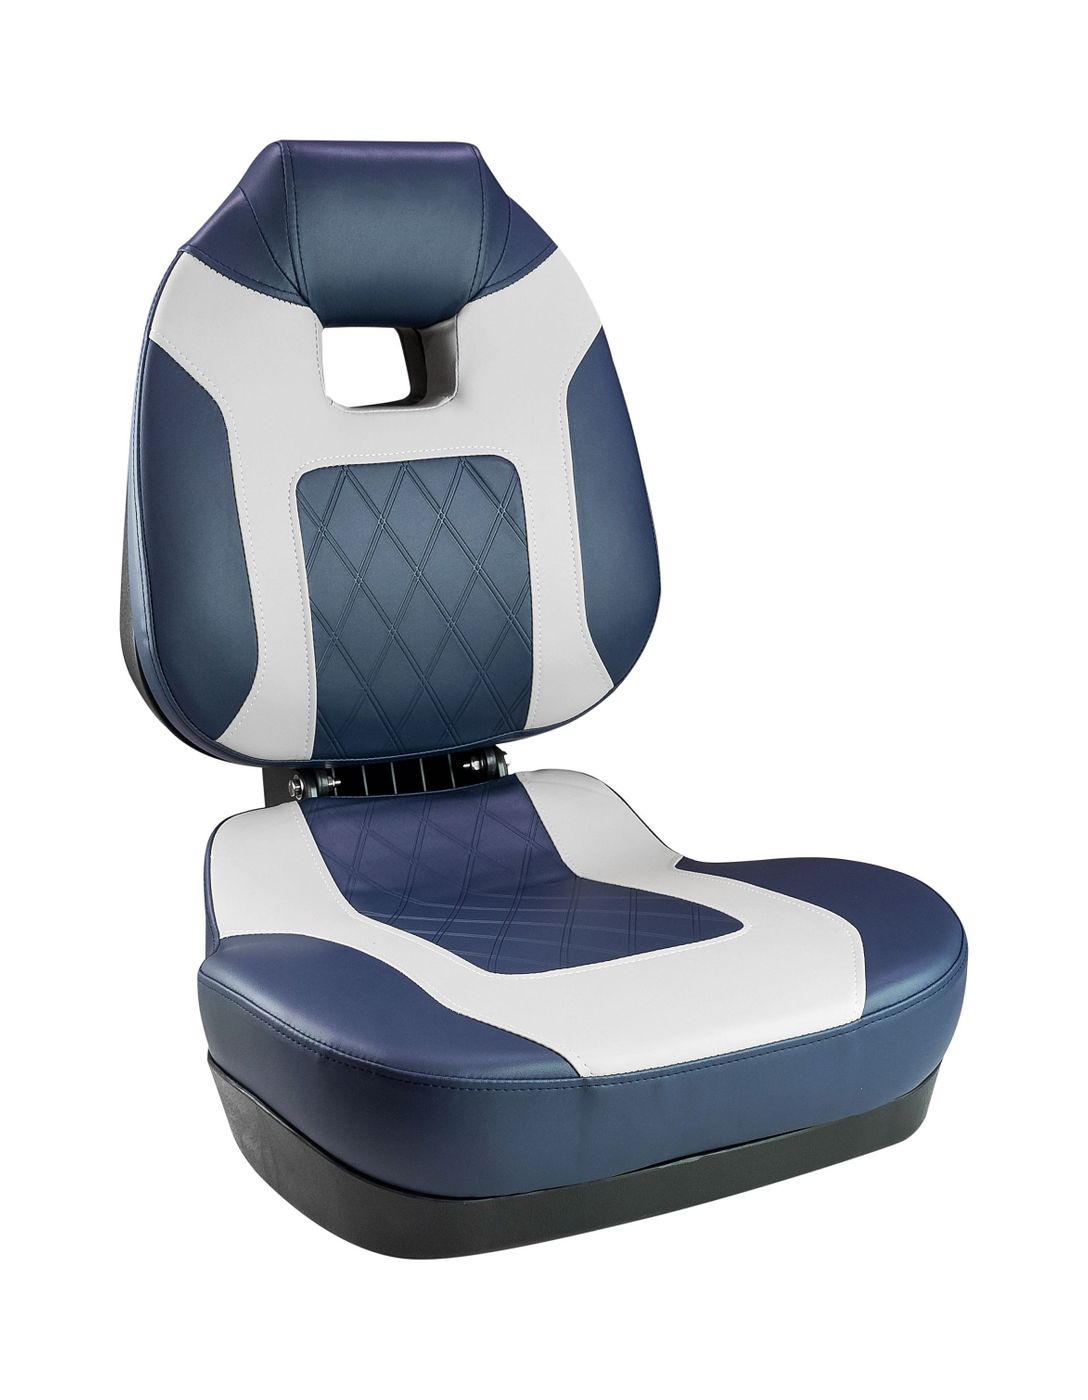 Кресло складное мягкое FISH PRO II с высокой спинкой, цвет синий/серый 1041419 кресло складное мягкое premium wave серый синий 1062031